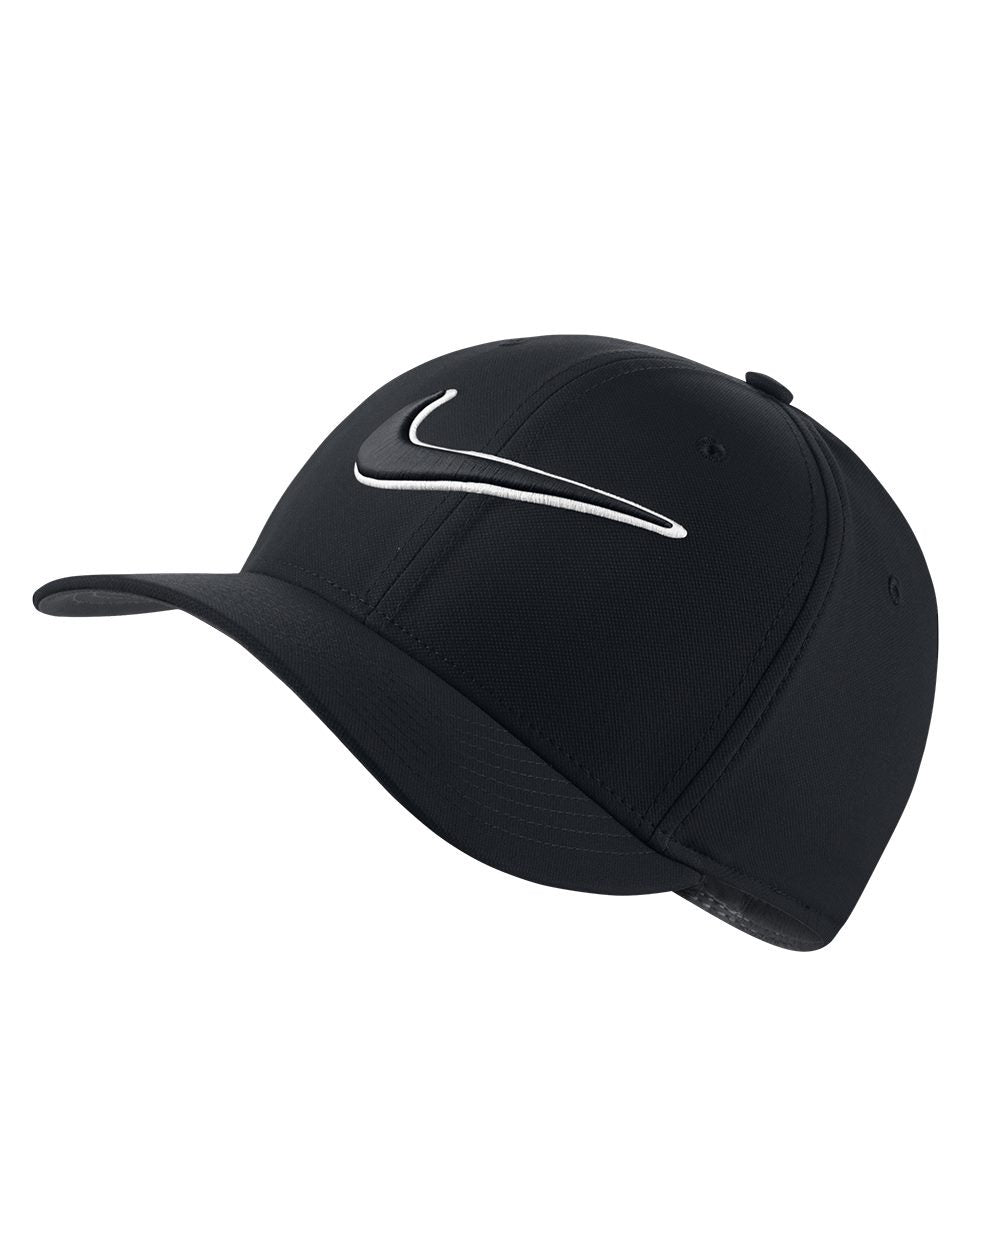 Nike Classic 99 Flexfit Cap Black